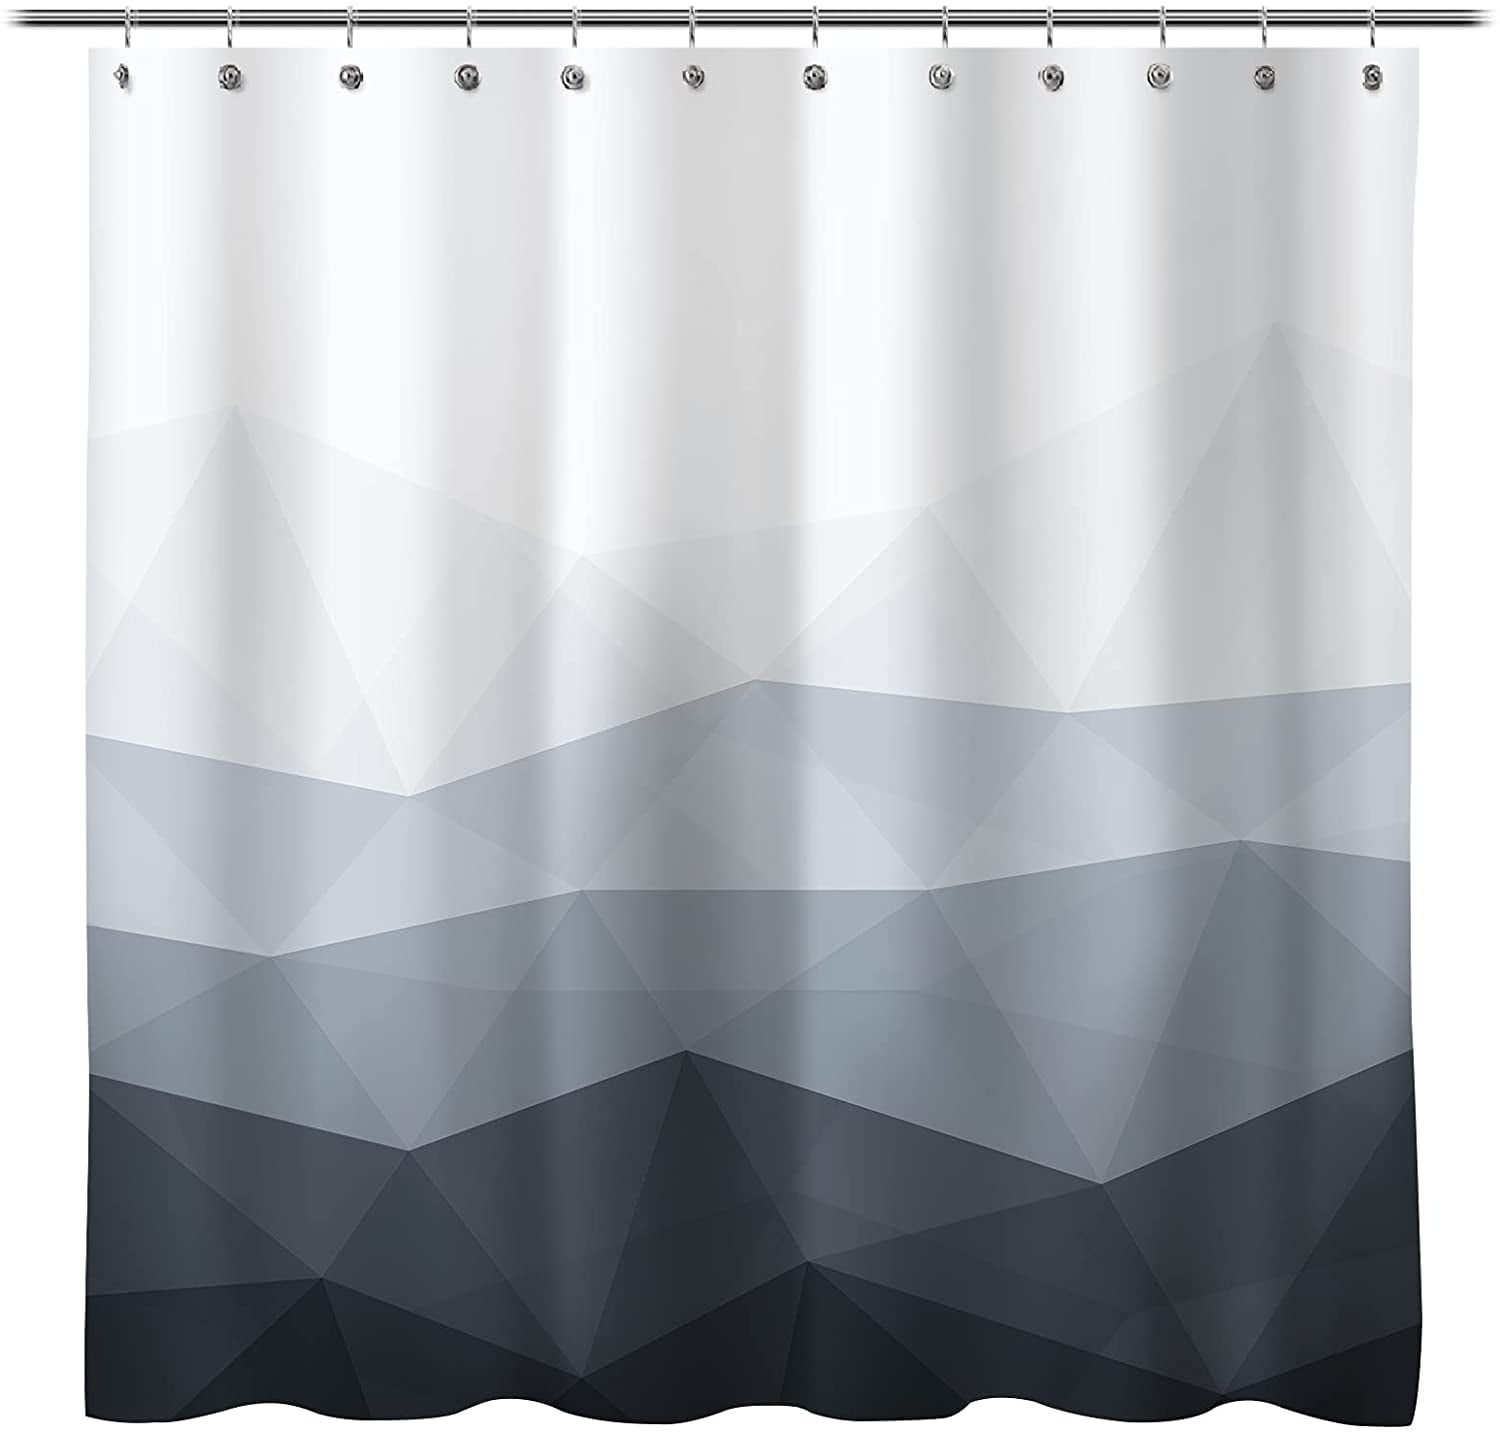 Waterproof Fabric Bathroom Shower Curtain 180 x 180 Marbled Grey Bathtub Curtain 